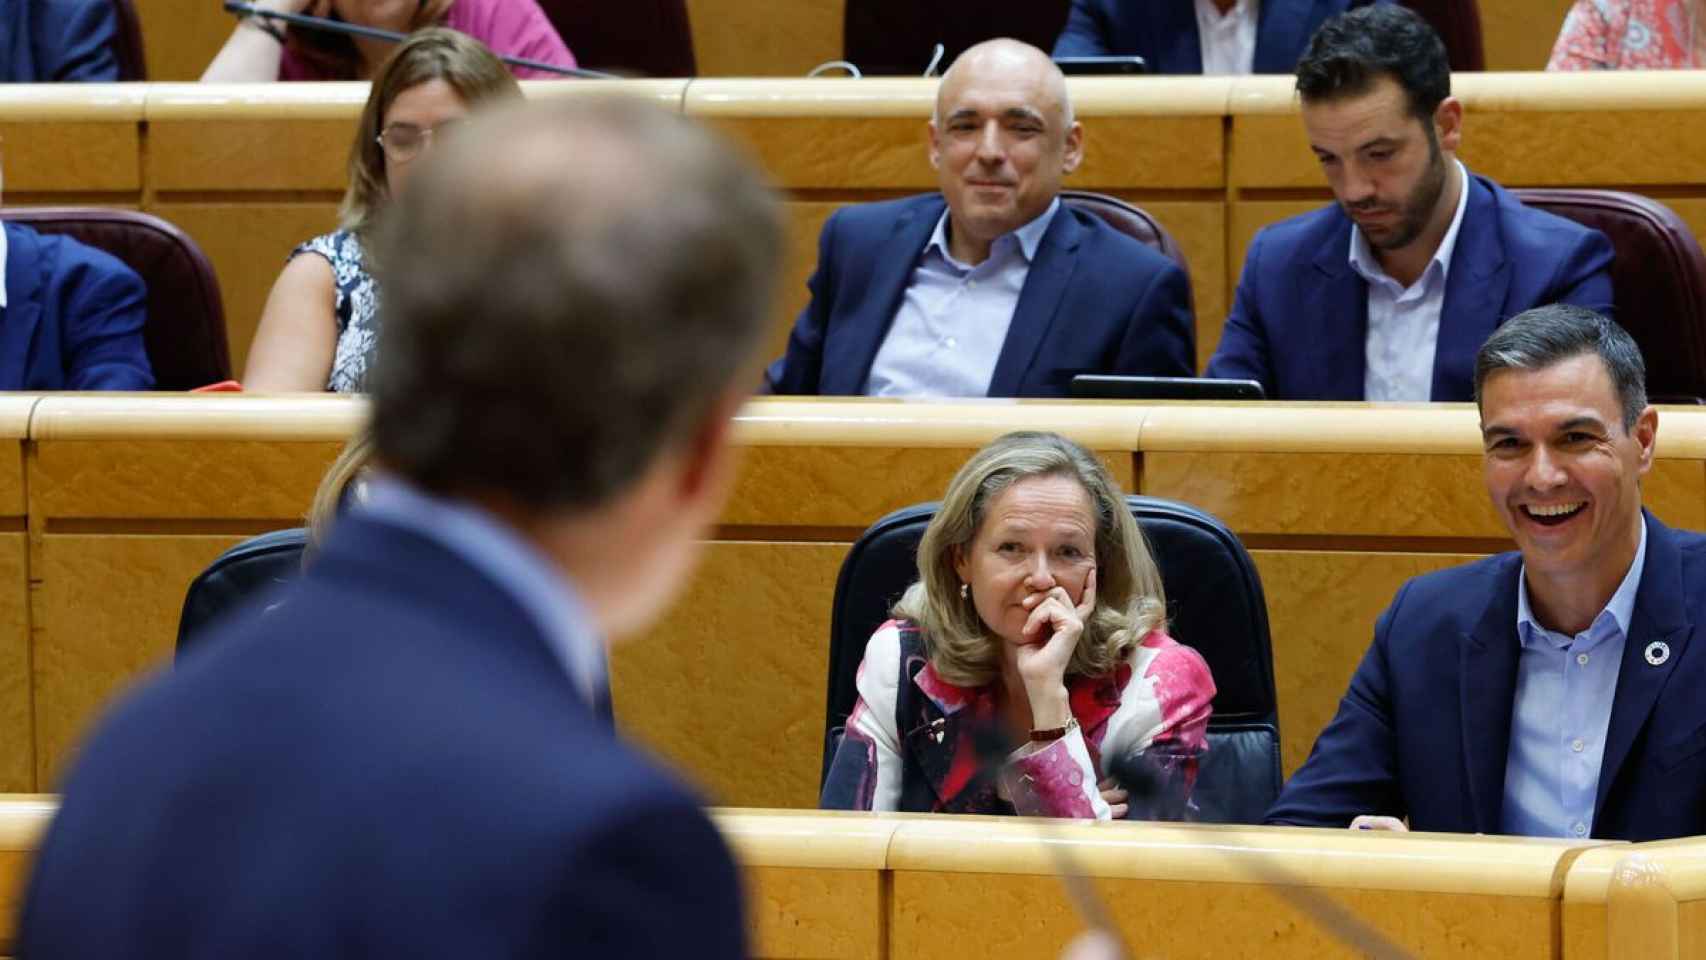 Feijóo se dirige a Pedro Sánchez, que ríe junto a Nadia Calviño, en uno de los cara a cara del Senado.